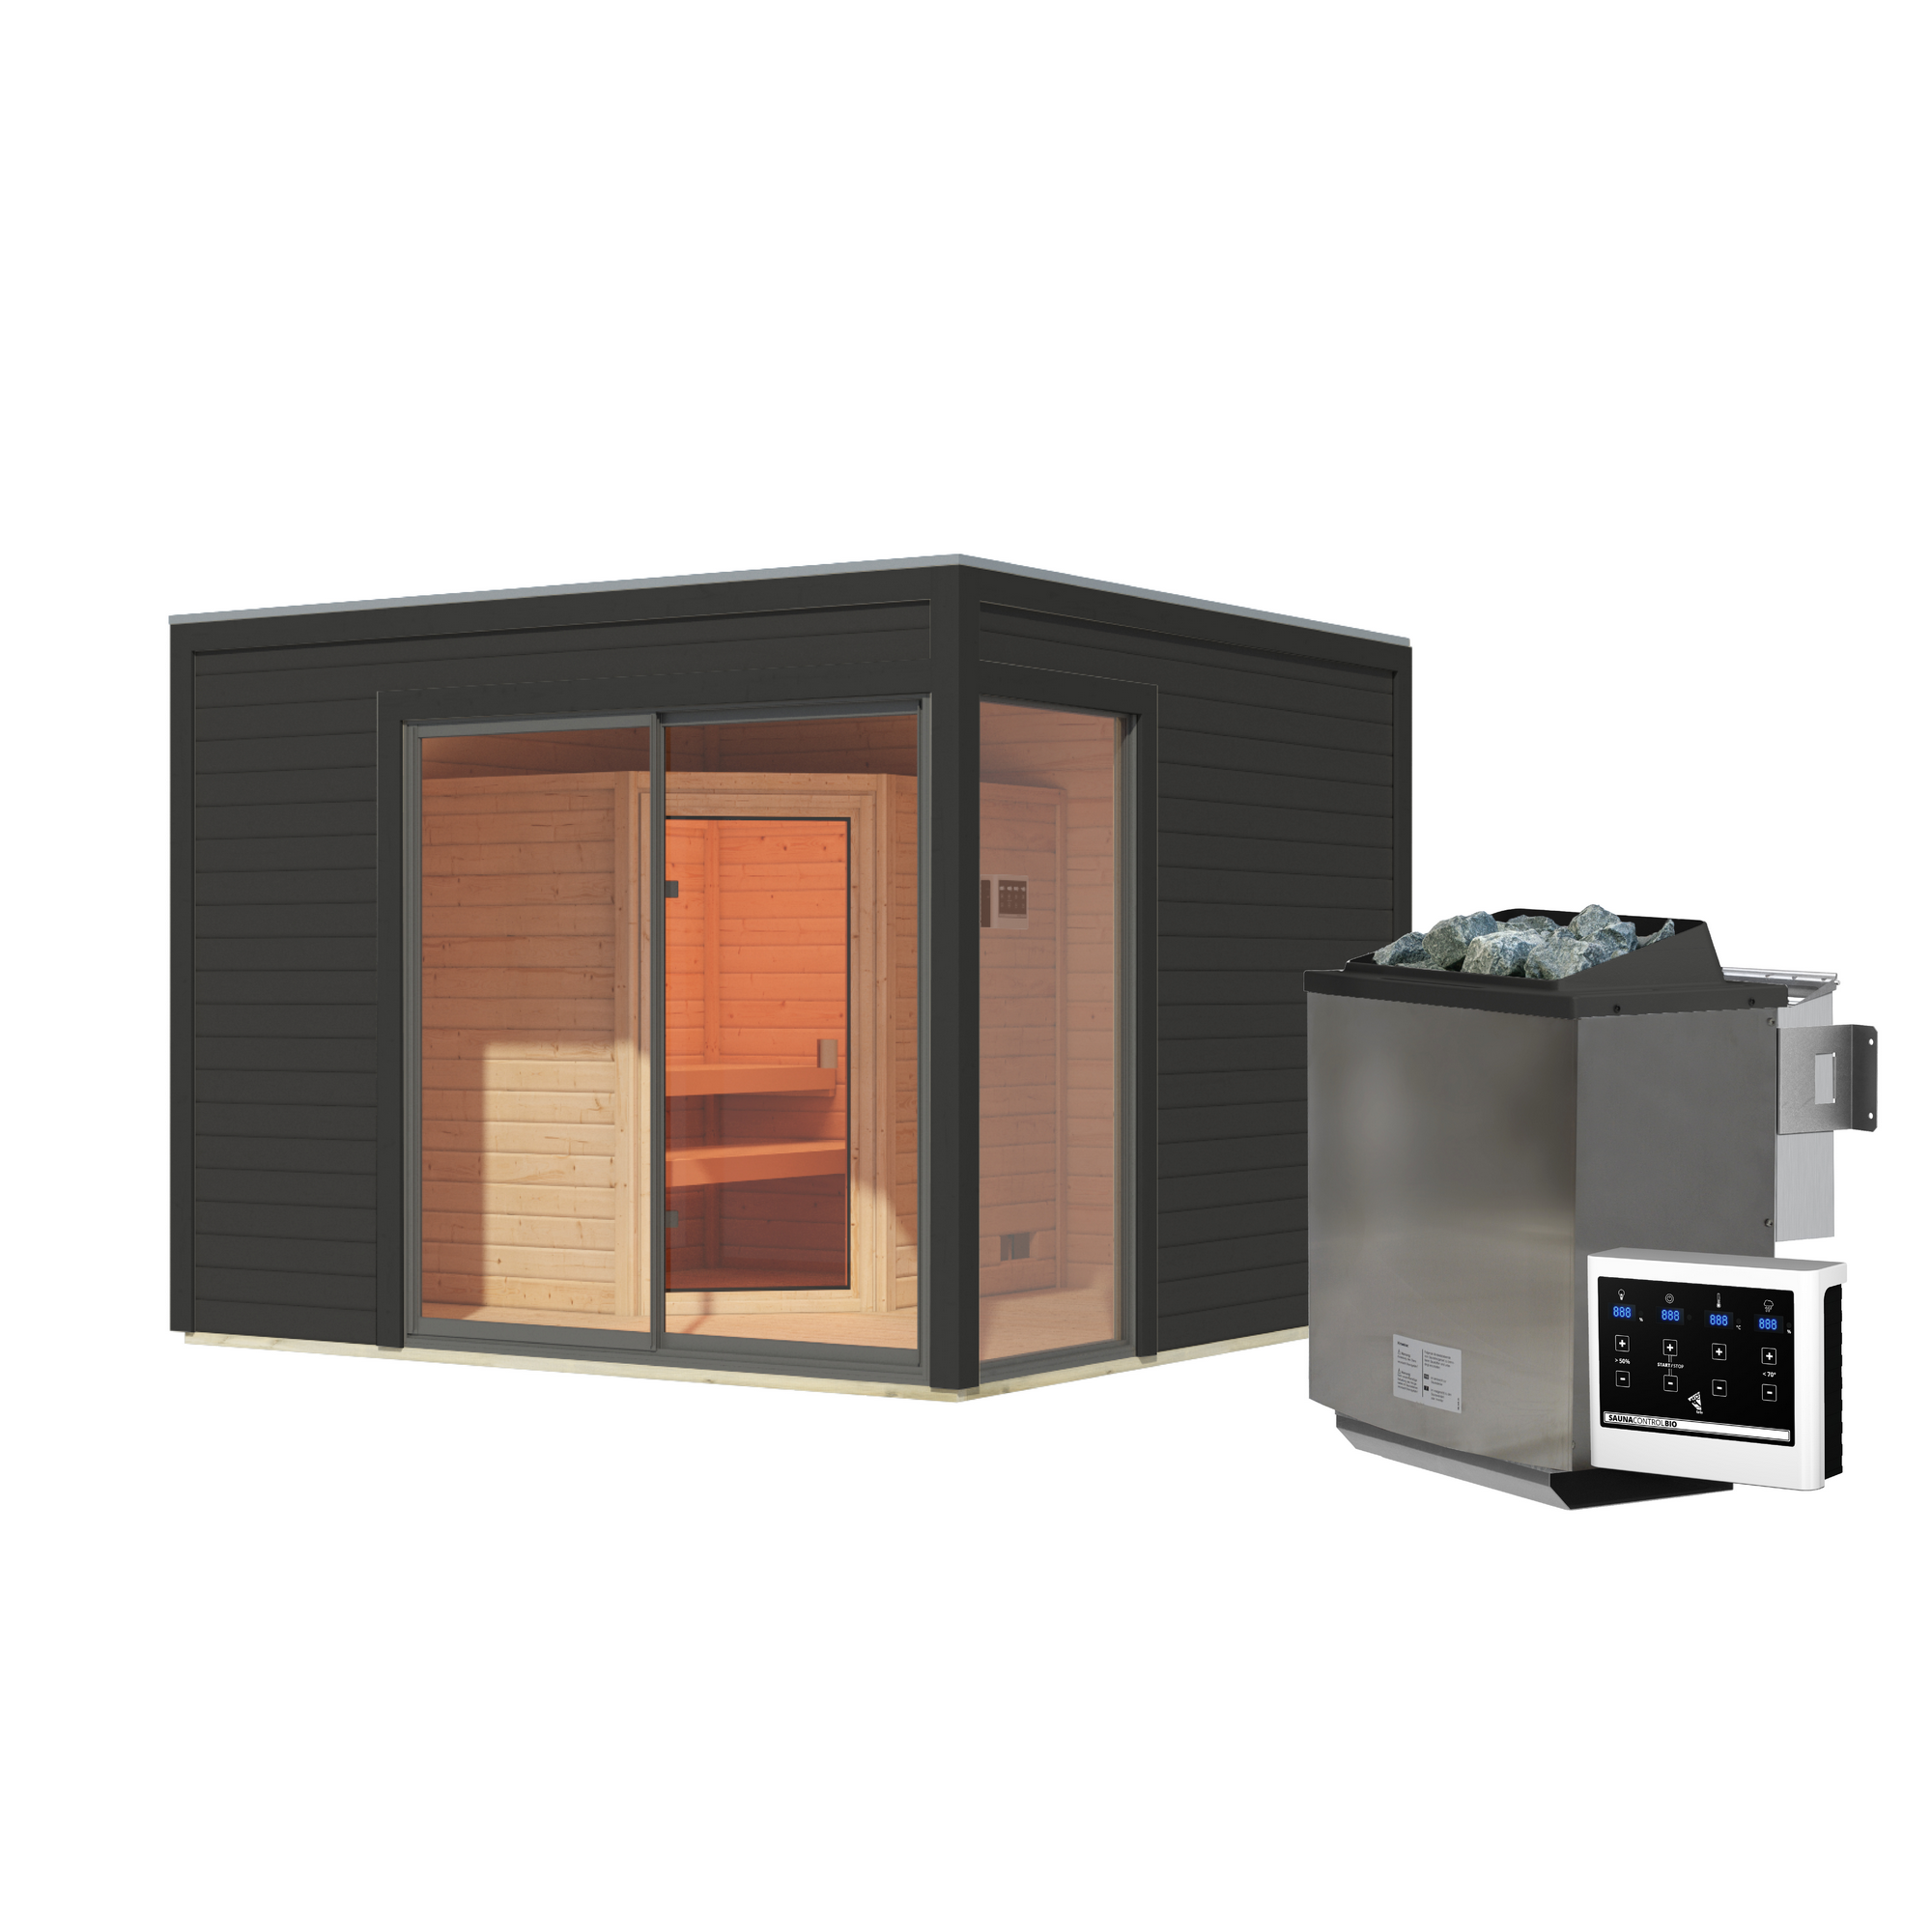 Gartenhaus mit Sauna 'Enrique 1 Variante A' anthrazit 9 kW Bio-Ofen externe Steuerung 308 x 308 x 242 cm + product picture